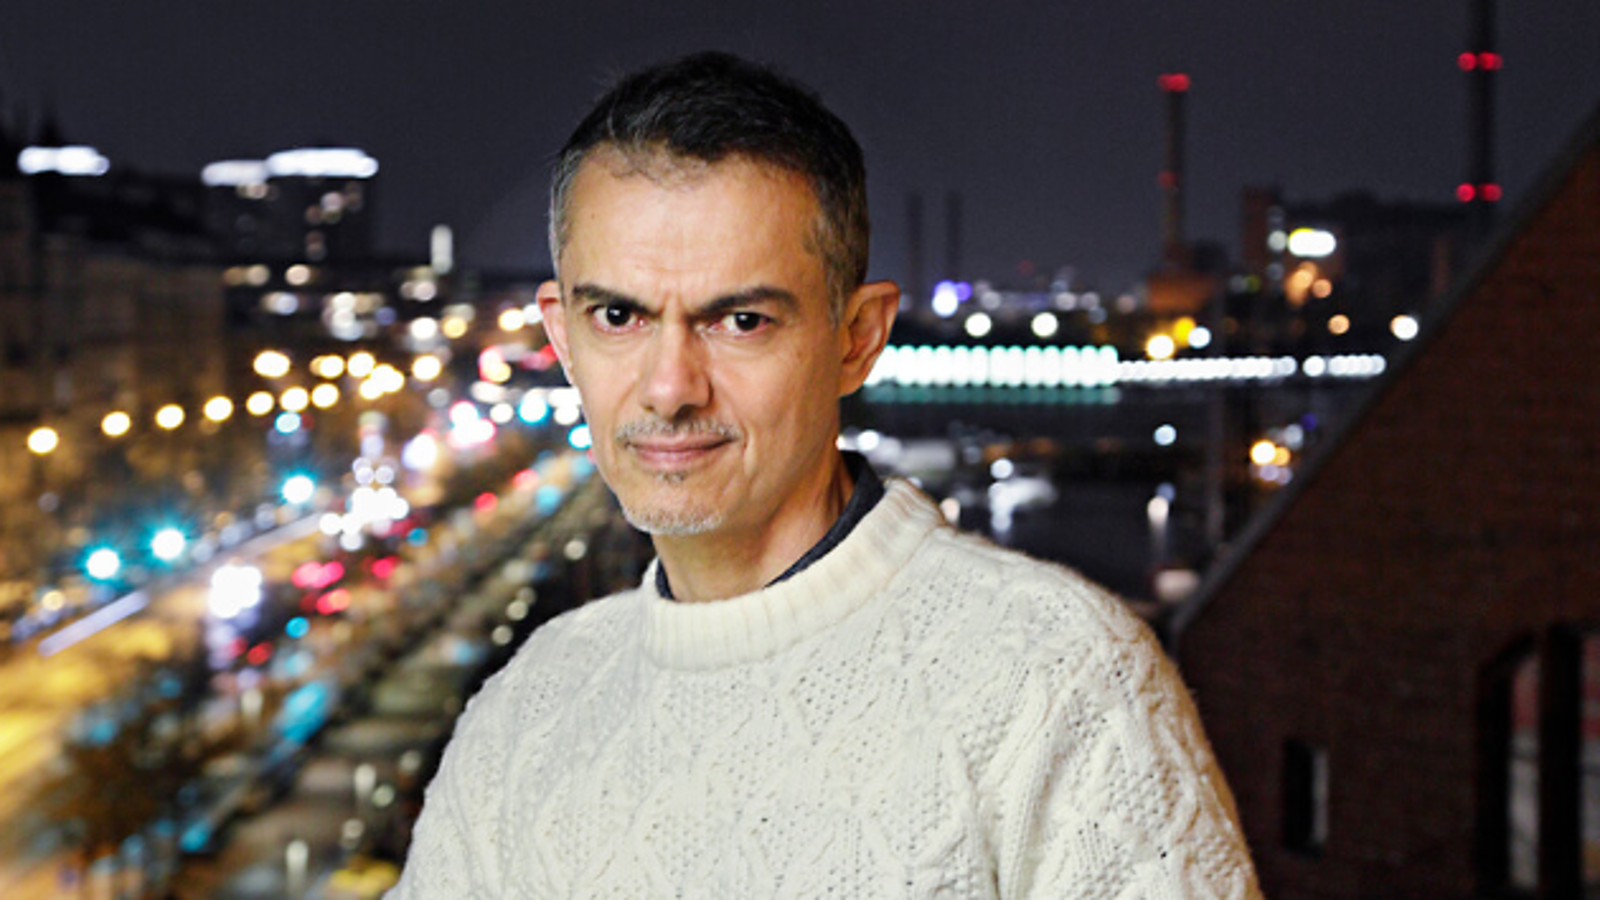 Kuvassa on Javier Torres vaaleassa villapaidassa parvekkeella ja taustalla näkyy kaupungin valoja alempana pimeässä illassa.